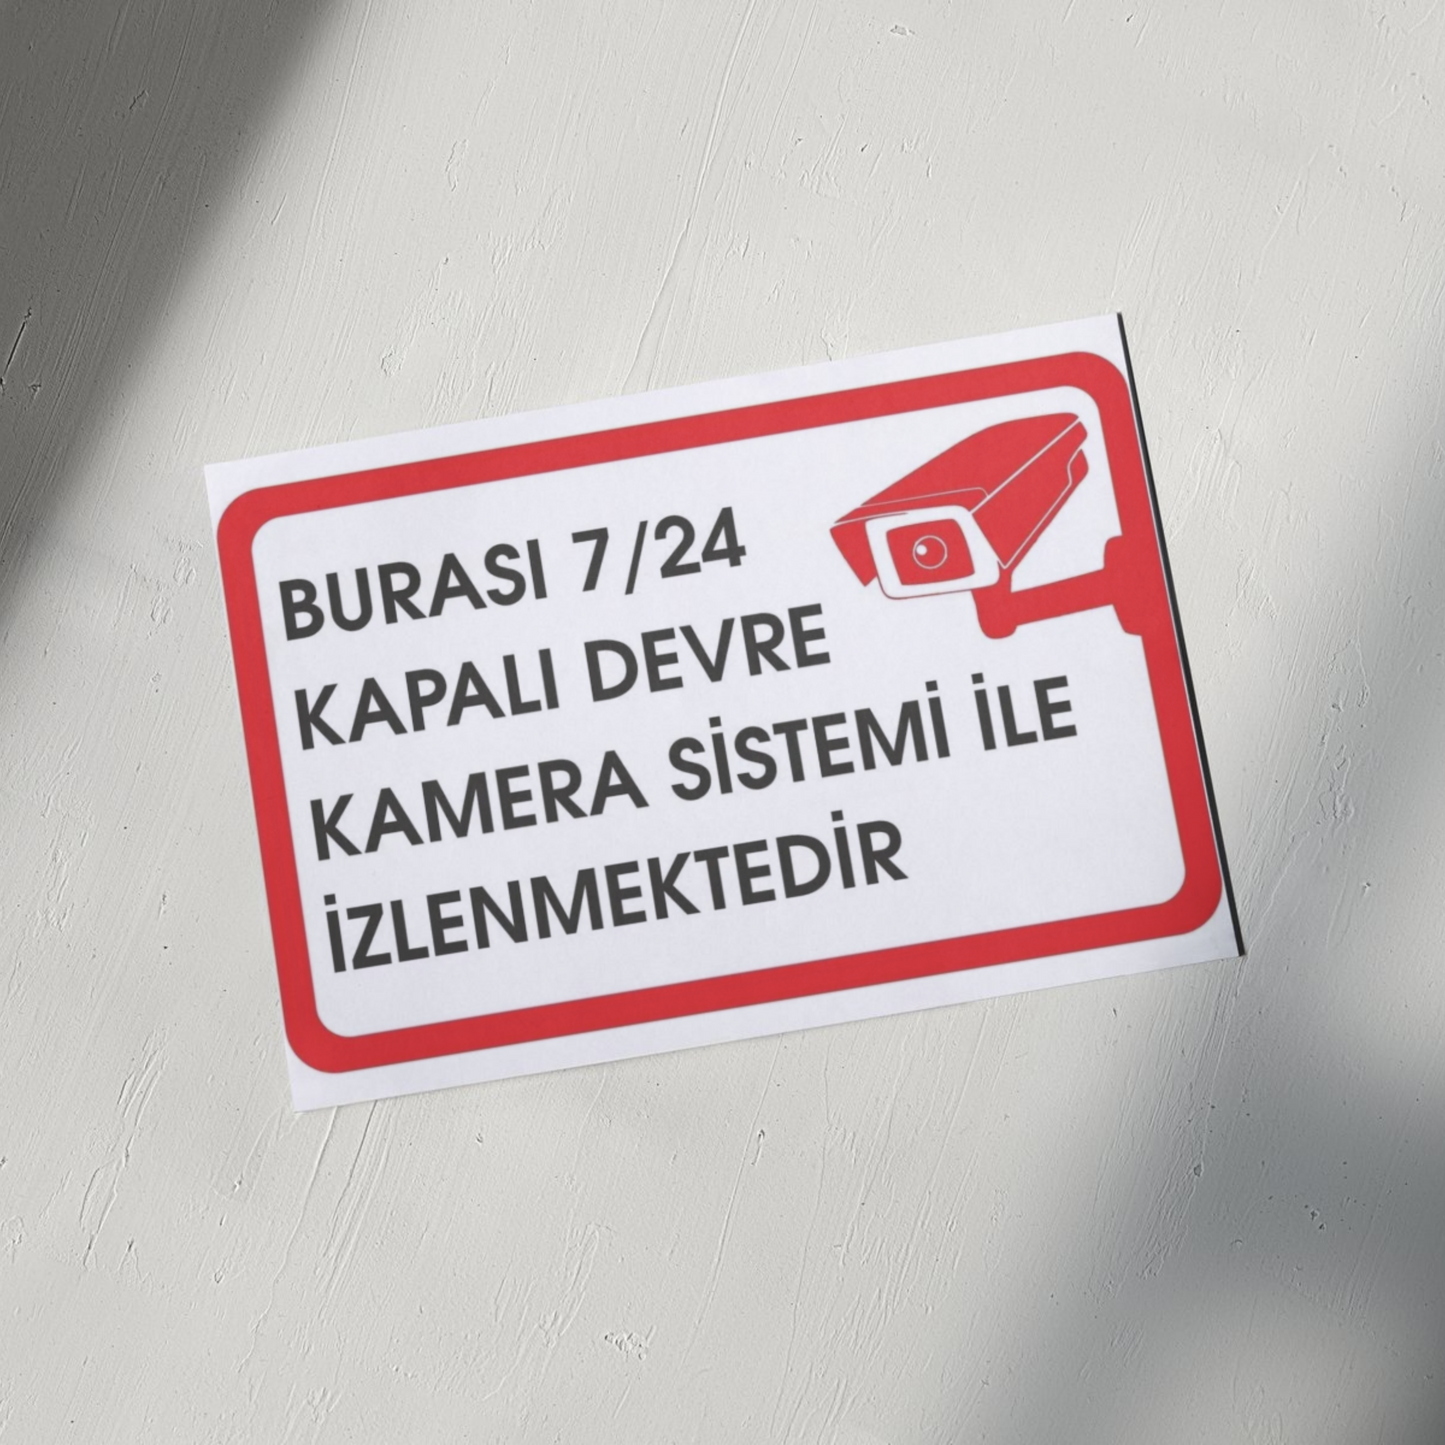 Uyarı Levhaları Serisinden "BURASI 7/24 KAPALI DEVRE KAMERA SİSTEMİ İLE İZLENMEKTEDİR" Tabelası 25 cm X 35 cm